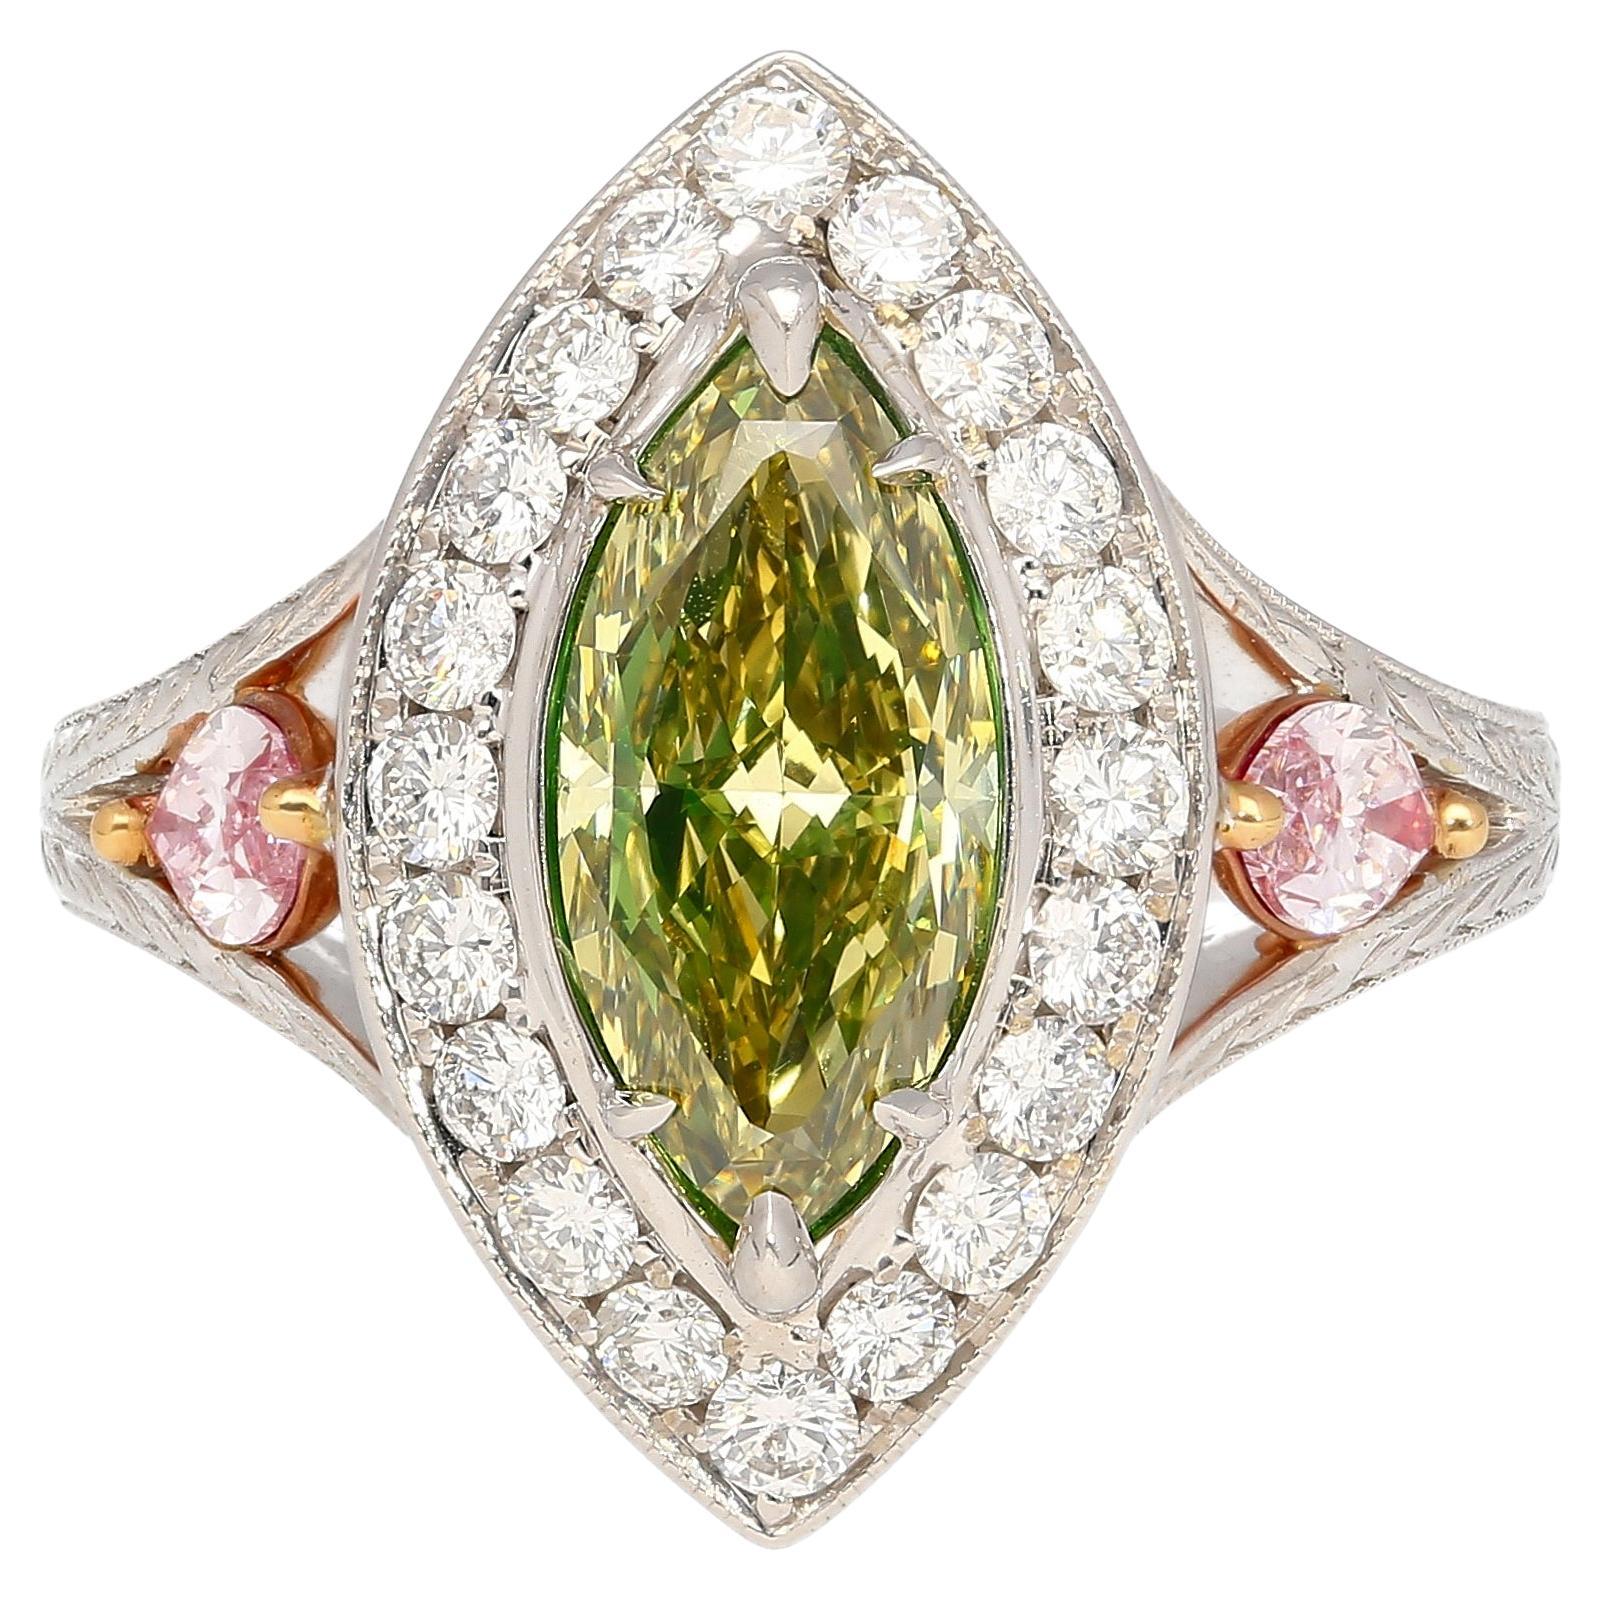 GIA Cert. Bague en diamant Marquise de 1,92 carat de couleur jaune verdâtre brun foncé